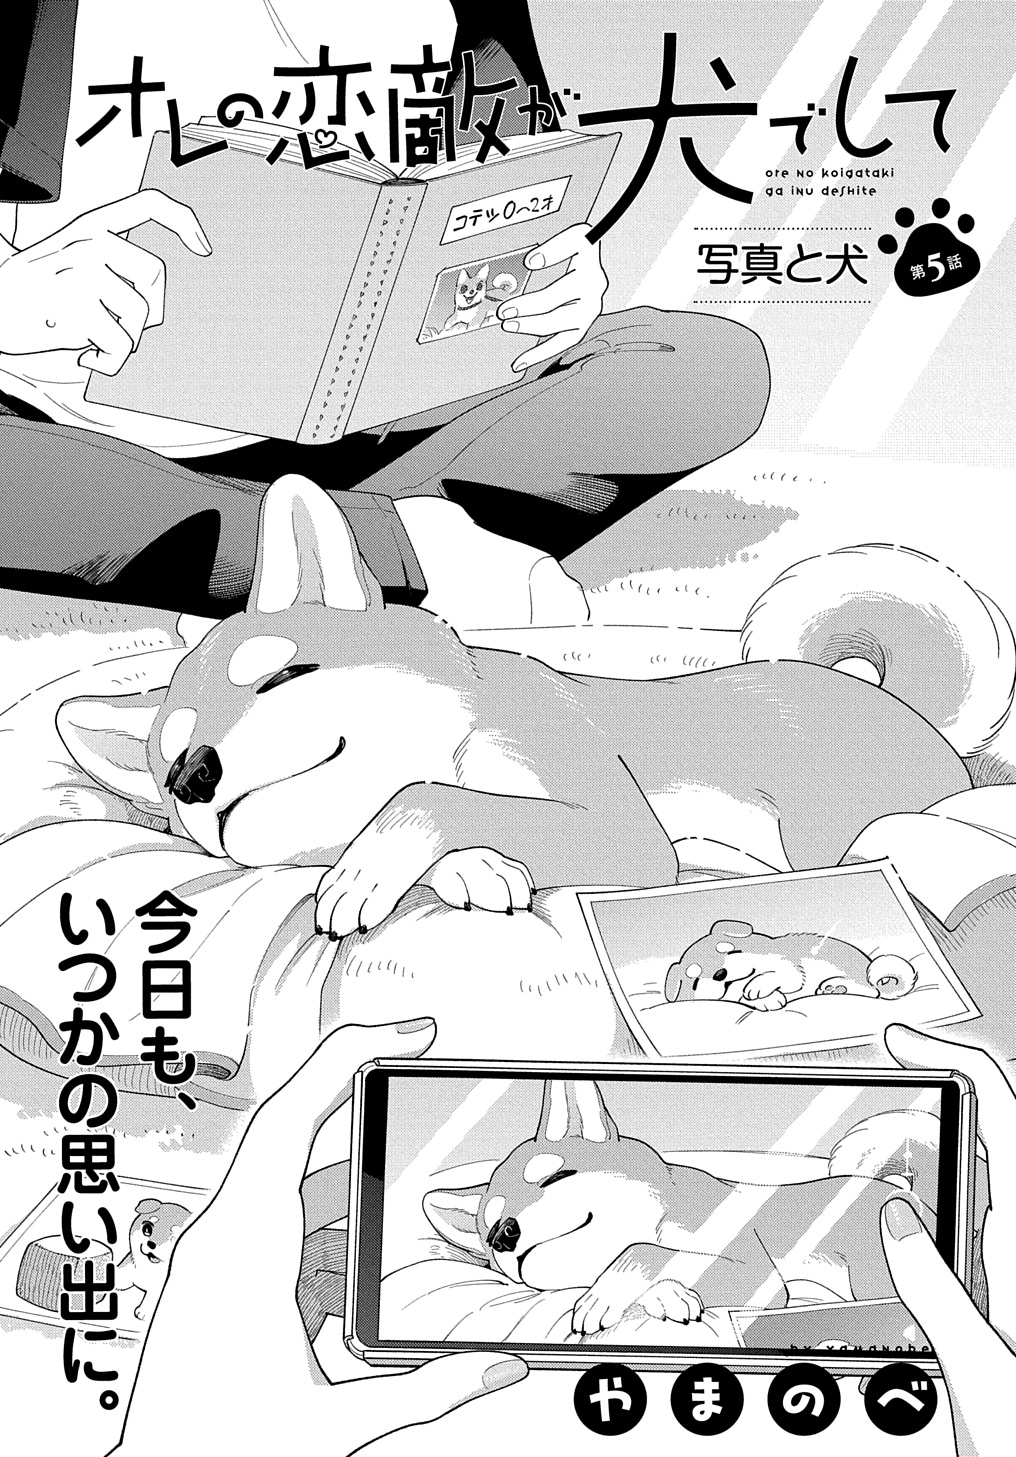 Ore no Koigataki ga Inu deshite - Chapter 5 - Page 1